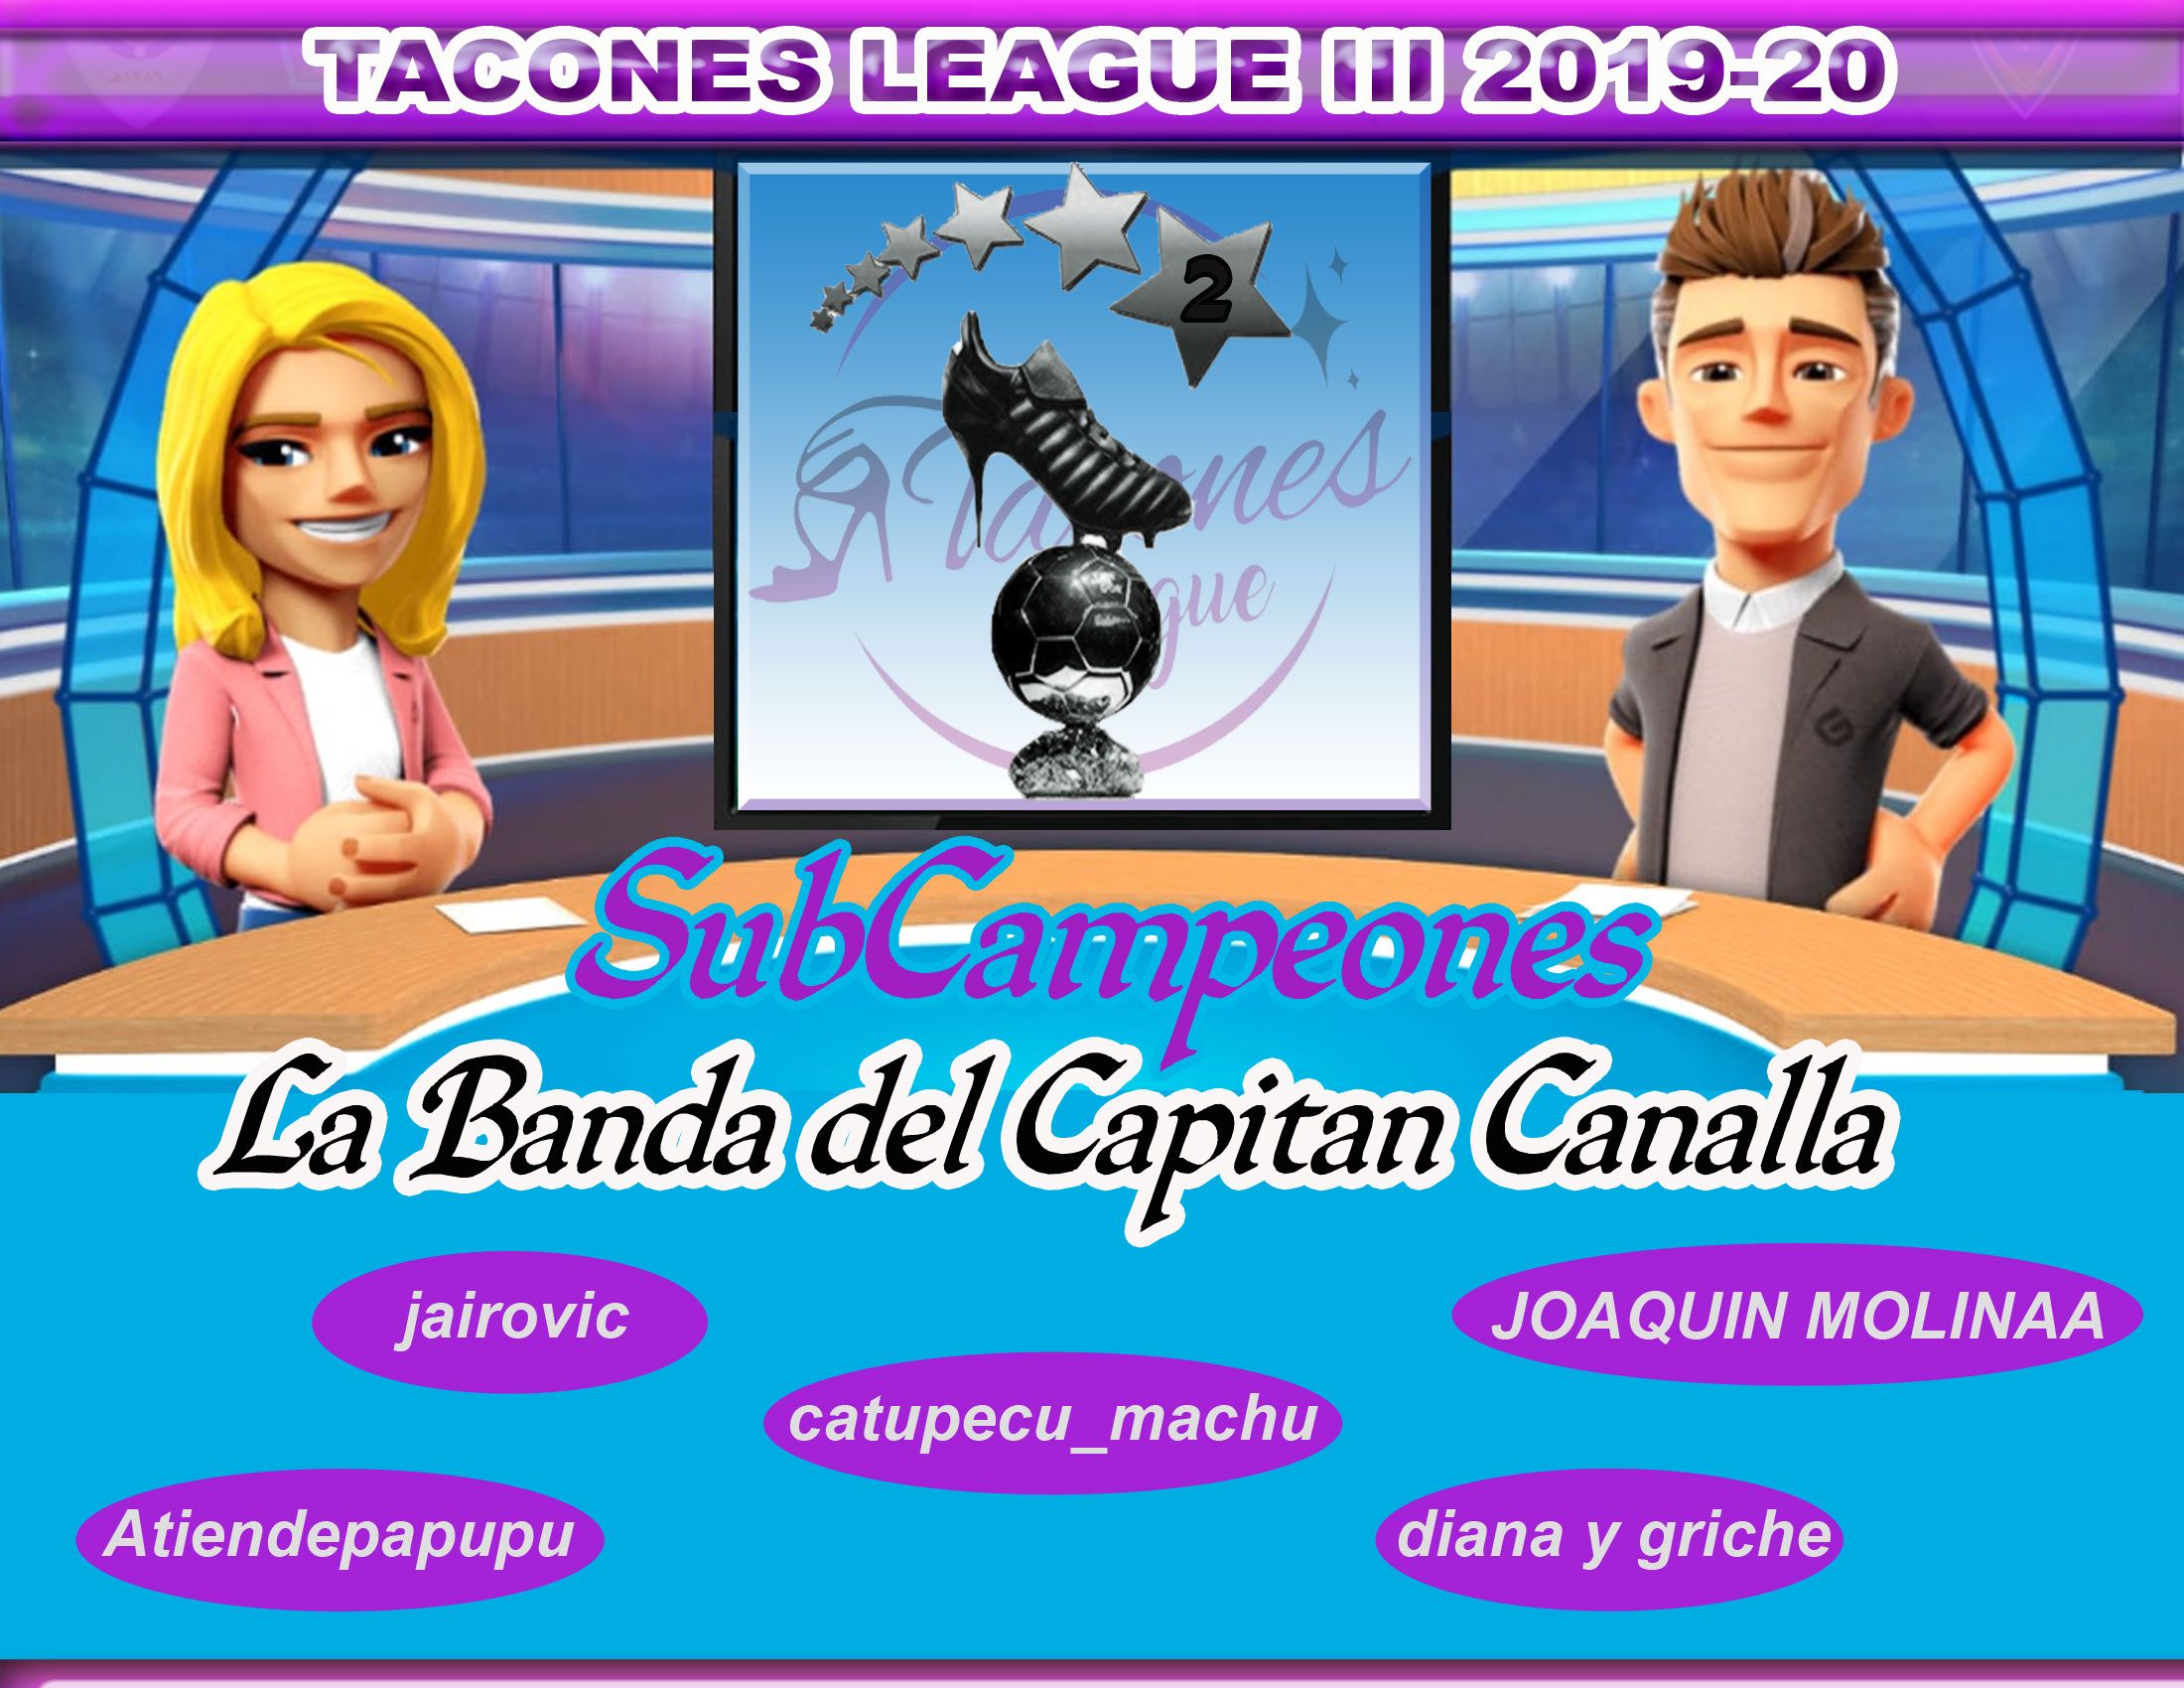 Tacones-League-TEAM-Subcampeones.jpg